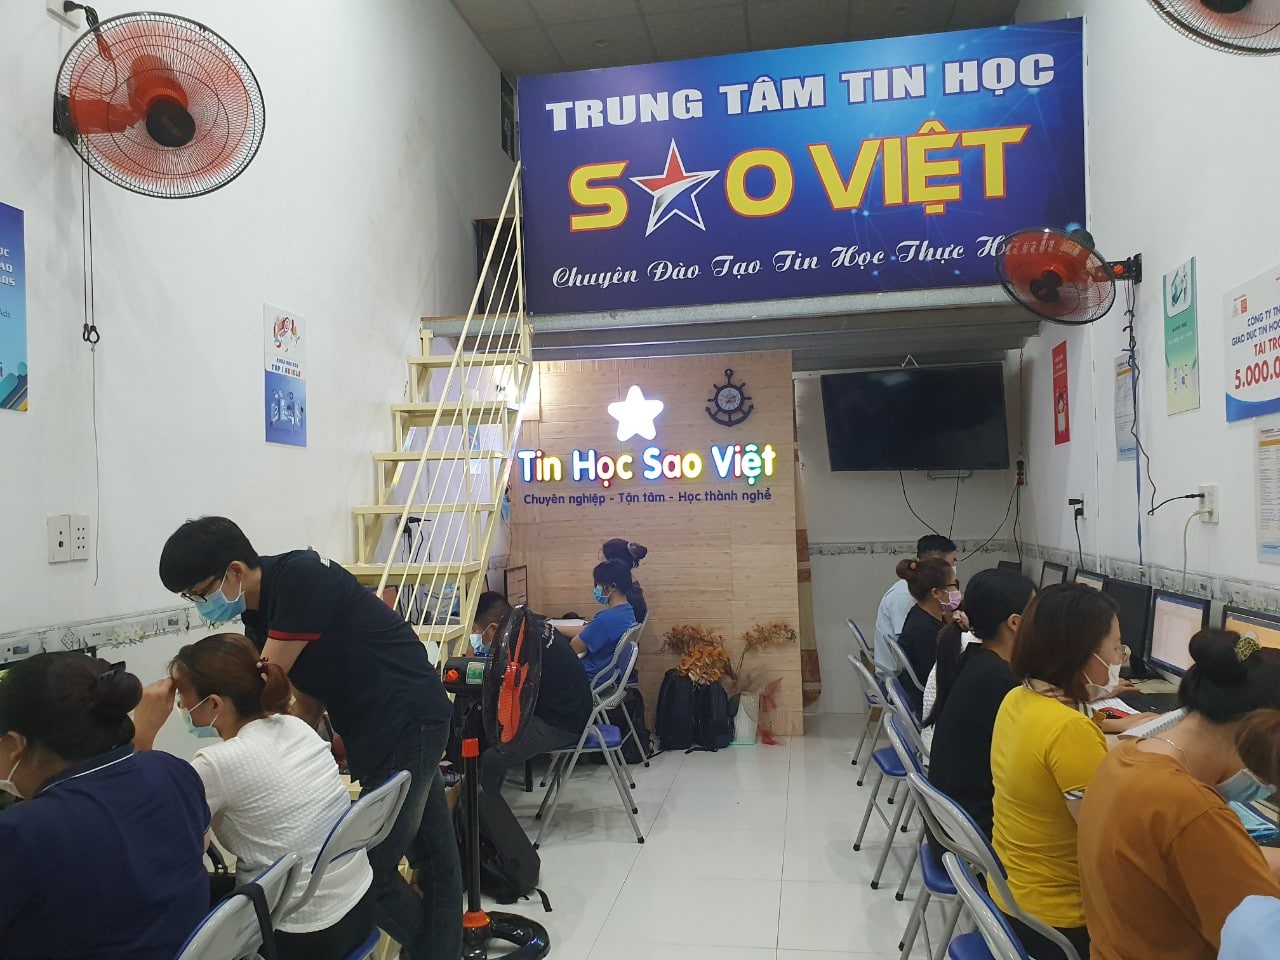 Các khóa học tại Trung tâm tin học Sao Việt ở Hà Nội